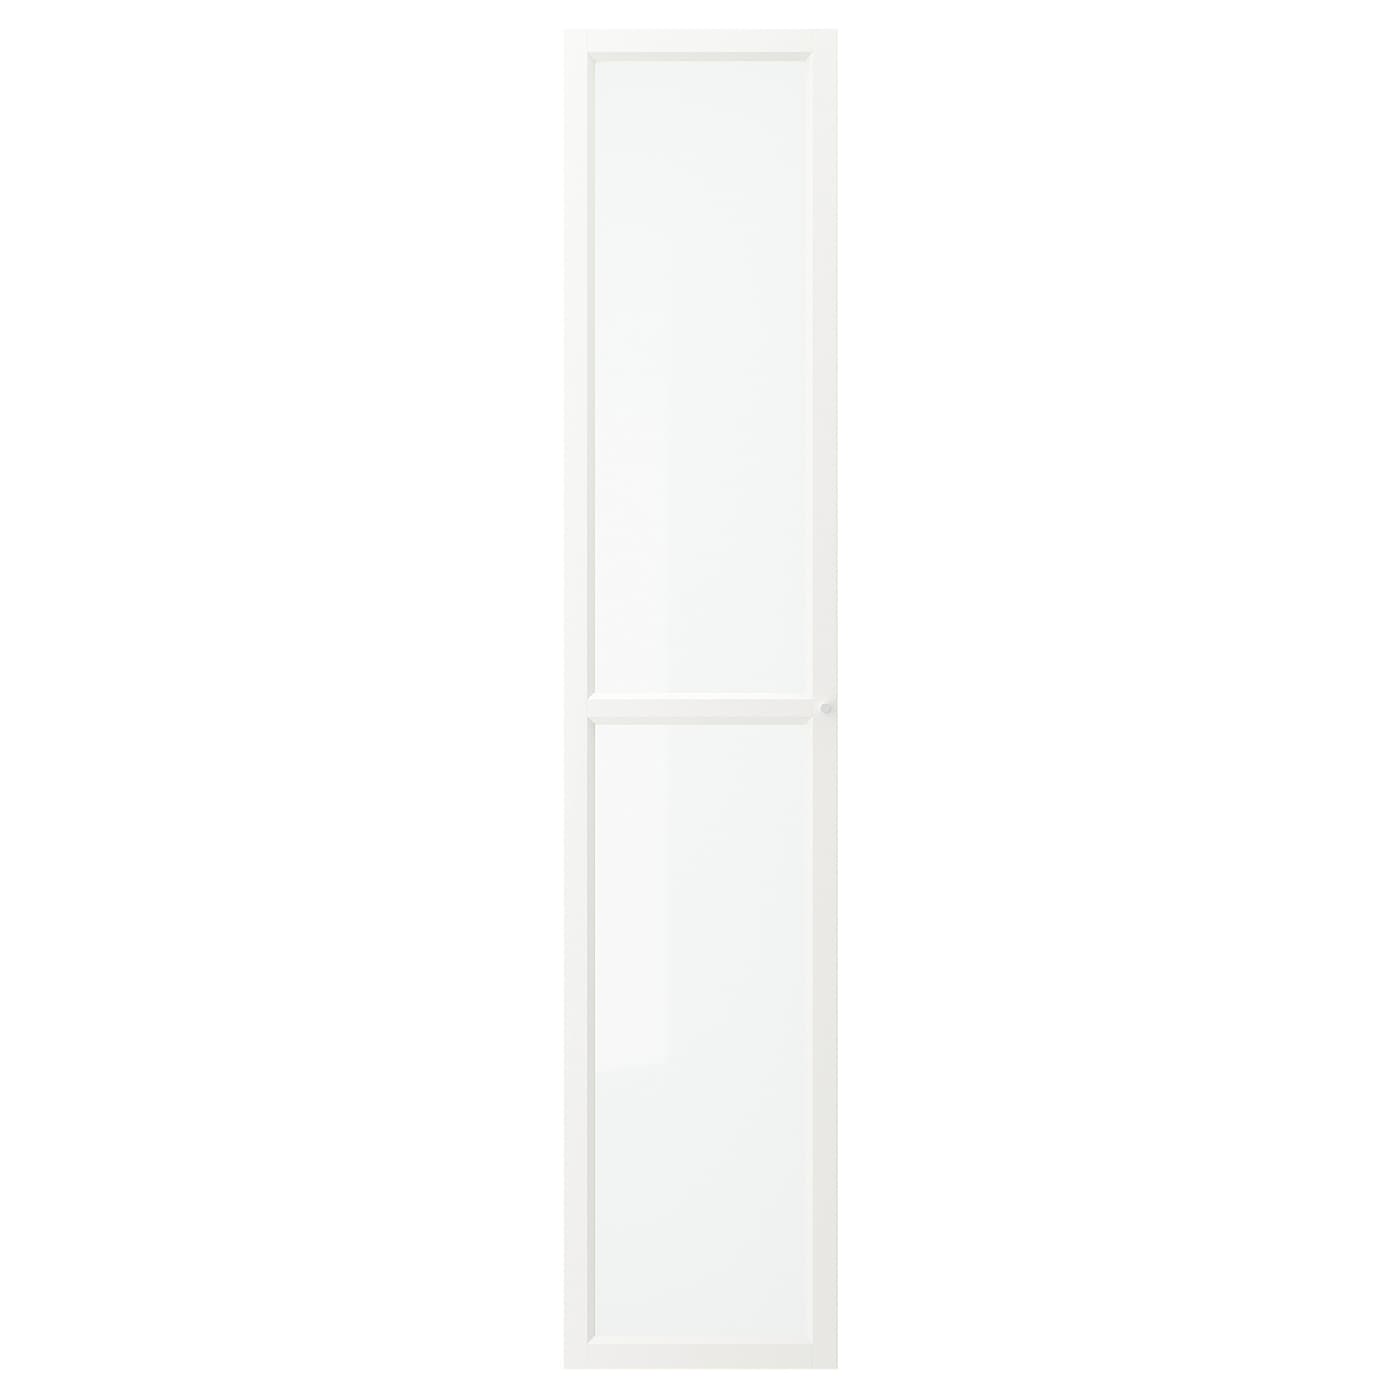 Дверца книжного шкафа - OXBERG IKEA/ ОКСБЕРГ ИКЕА, 40х192 см,  белый/прозрачный